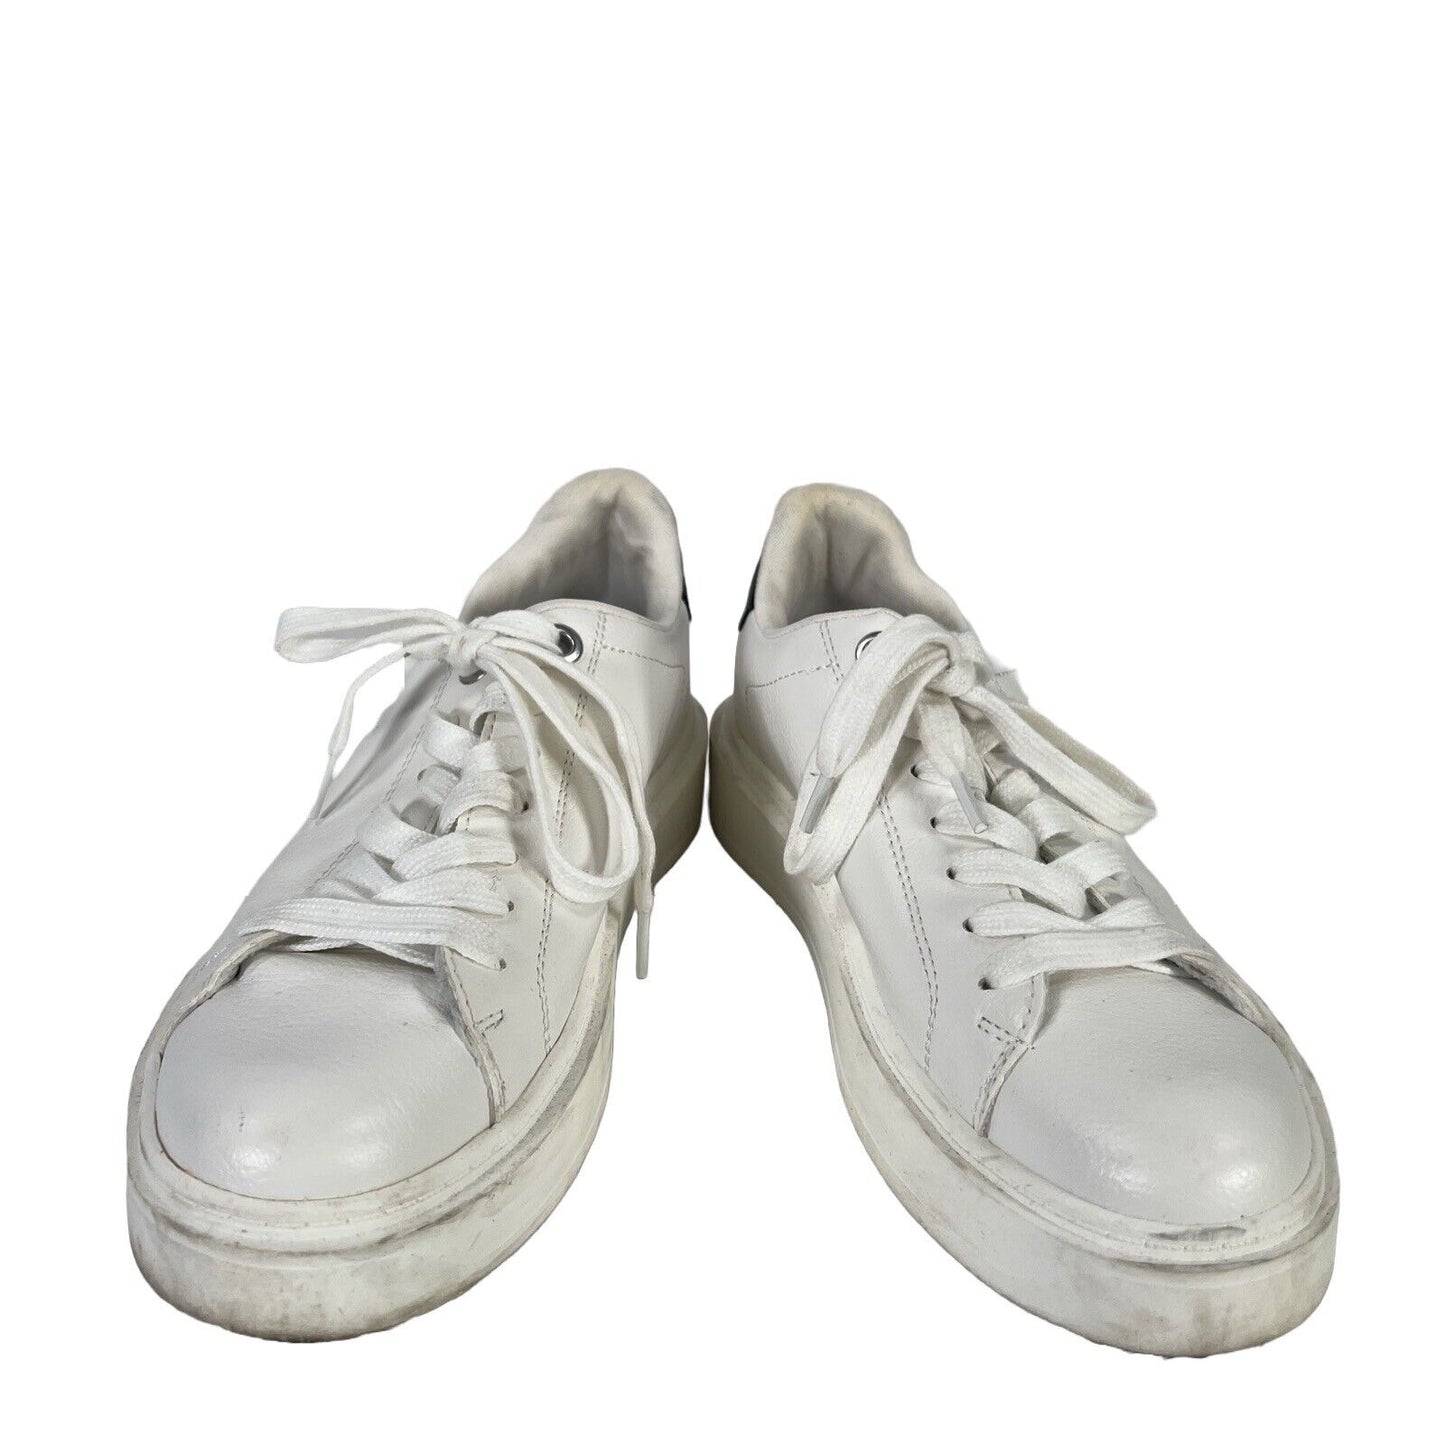 Steve Madden Zapatillas blancas con cordones y plataforma Catcher para mujer - 7.5